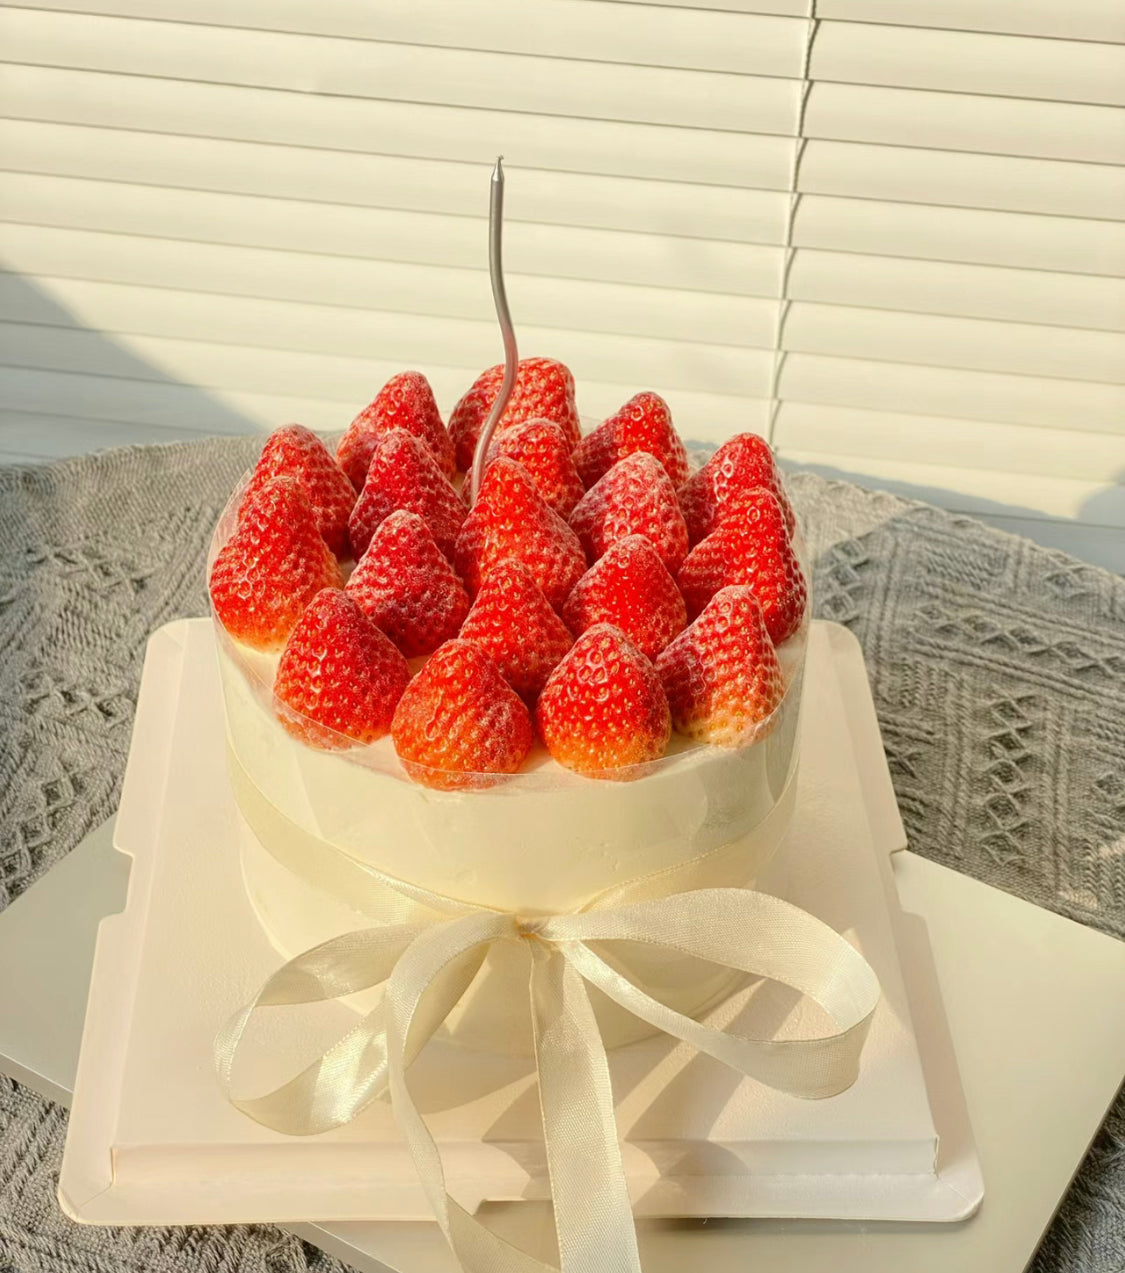 Kiss my strawberries cake